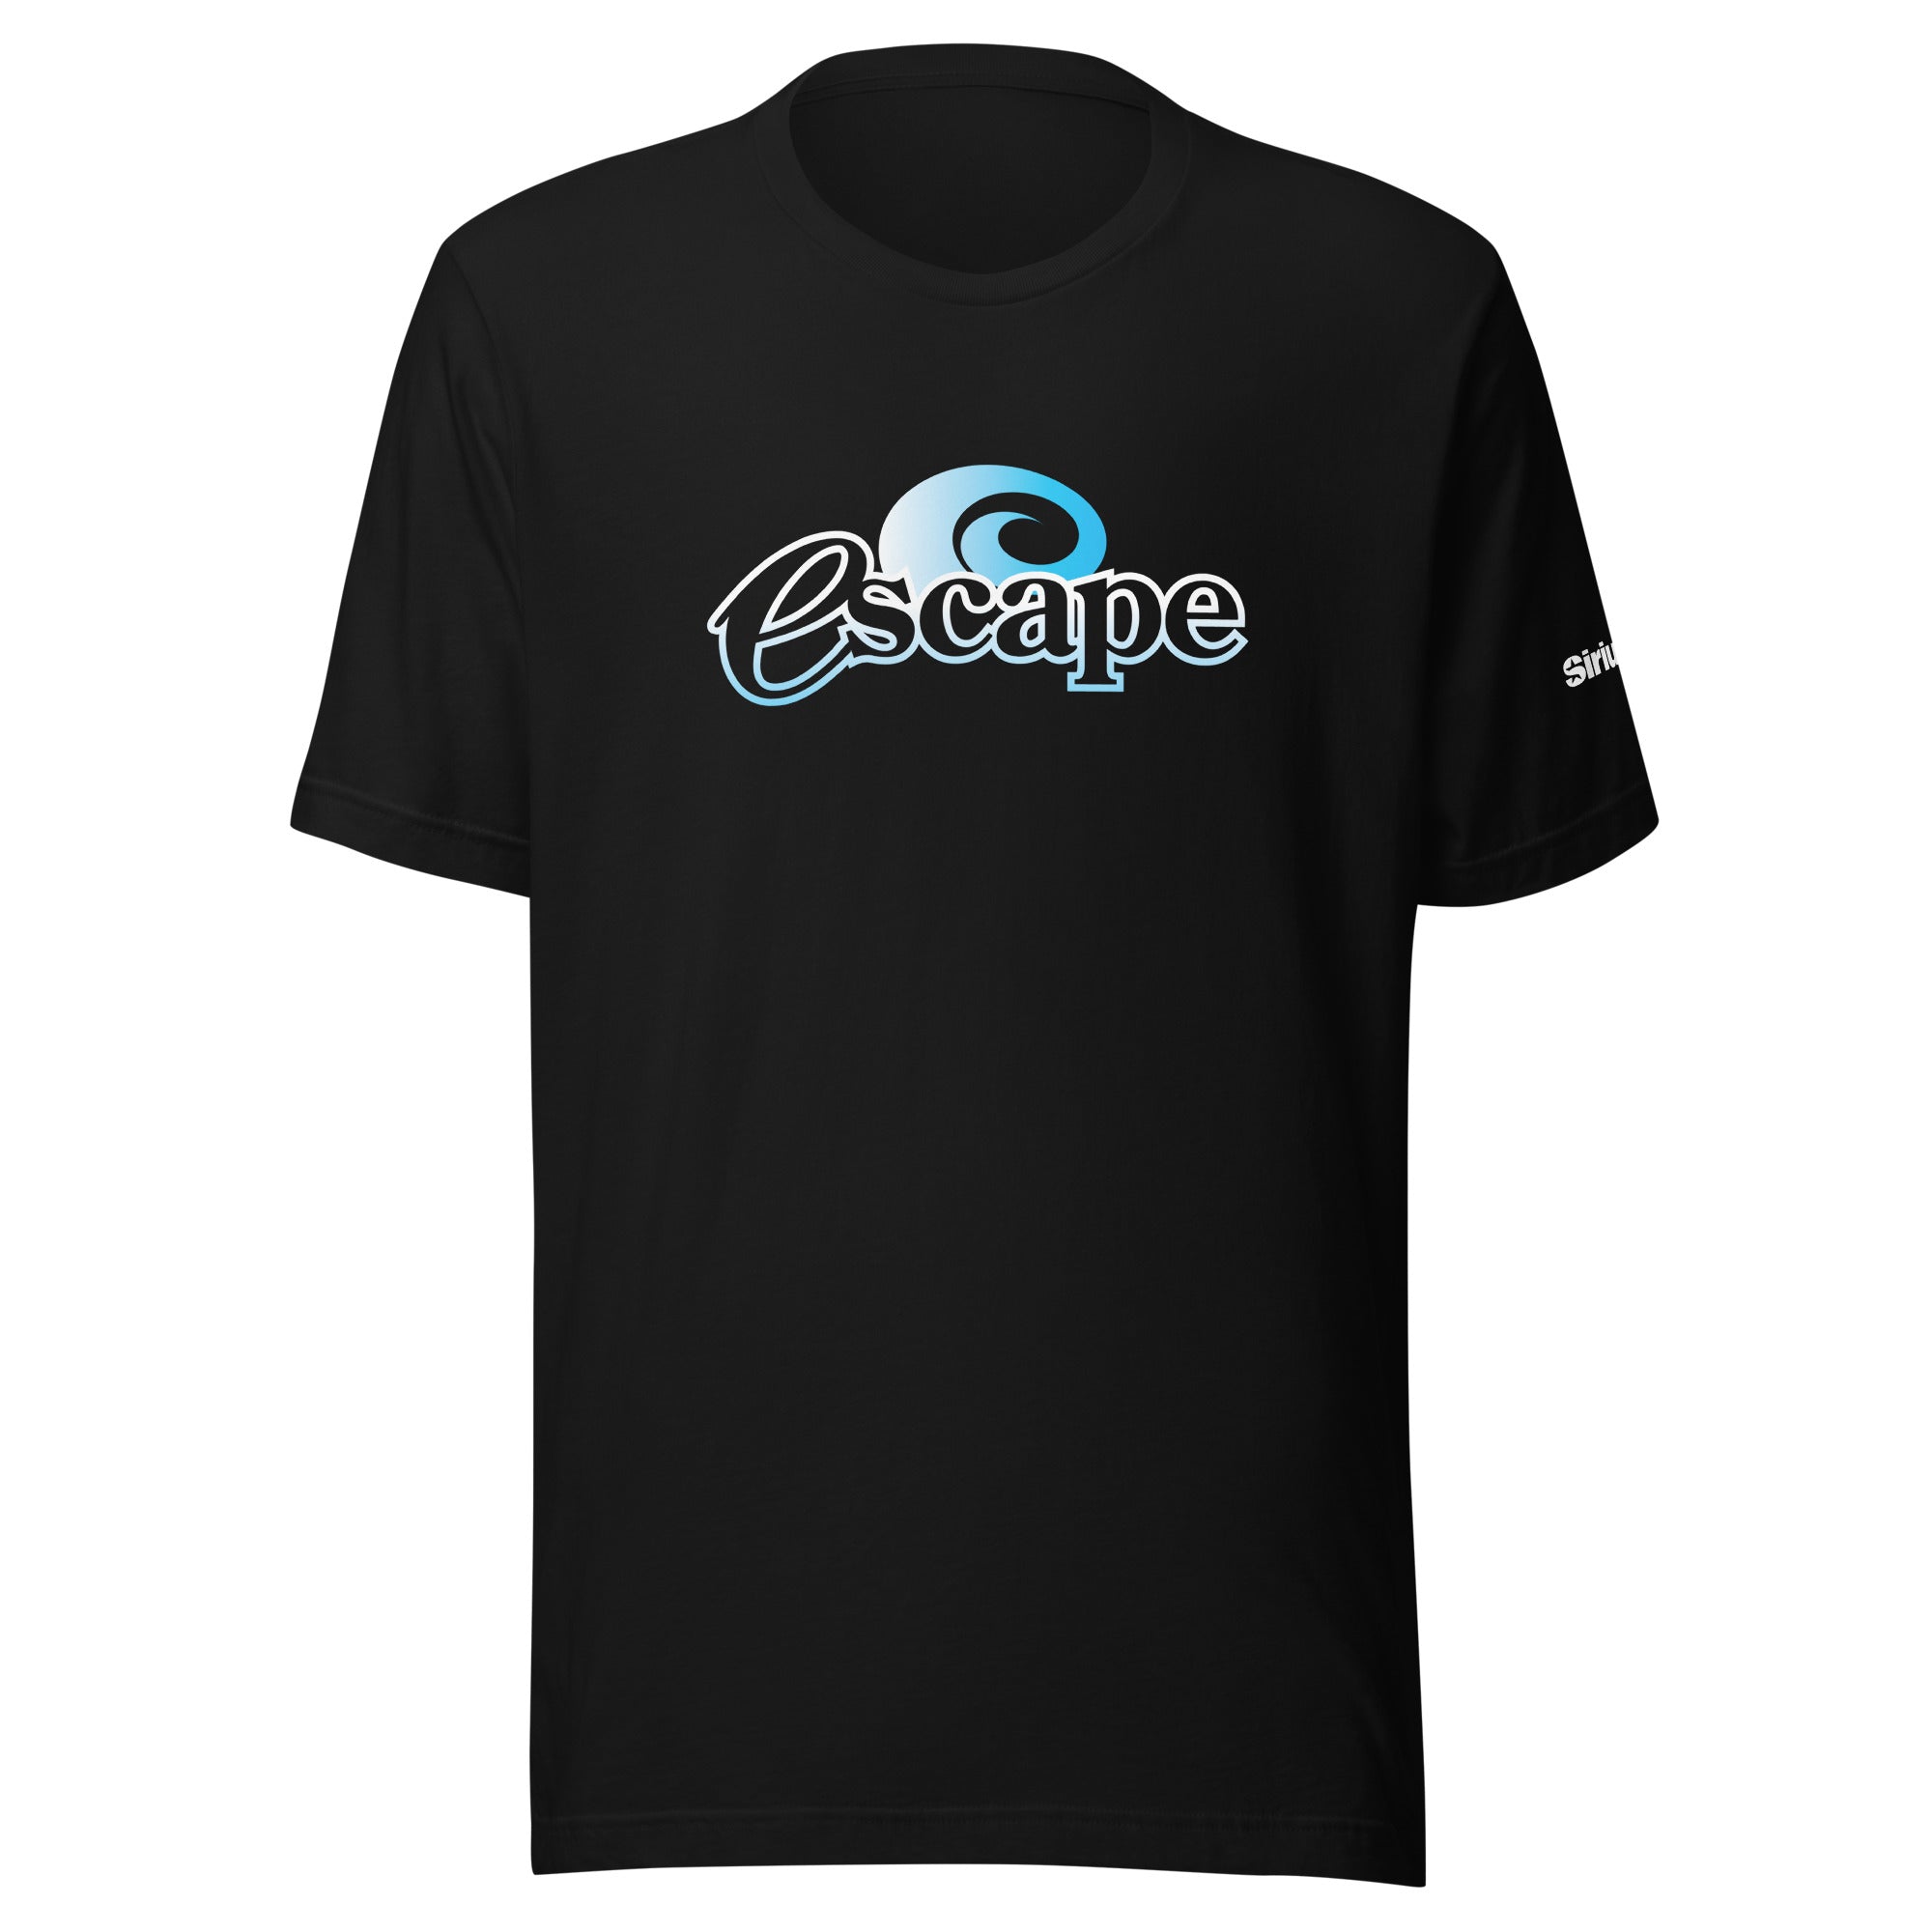 Escape: T-shirt (Black)